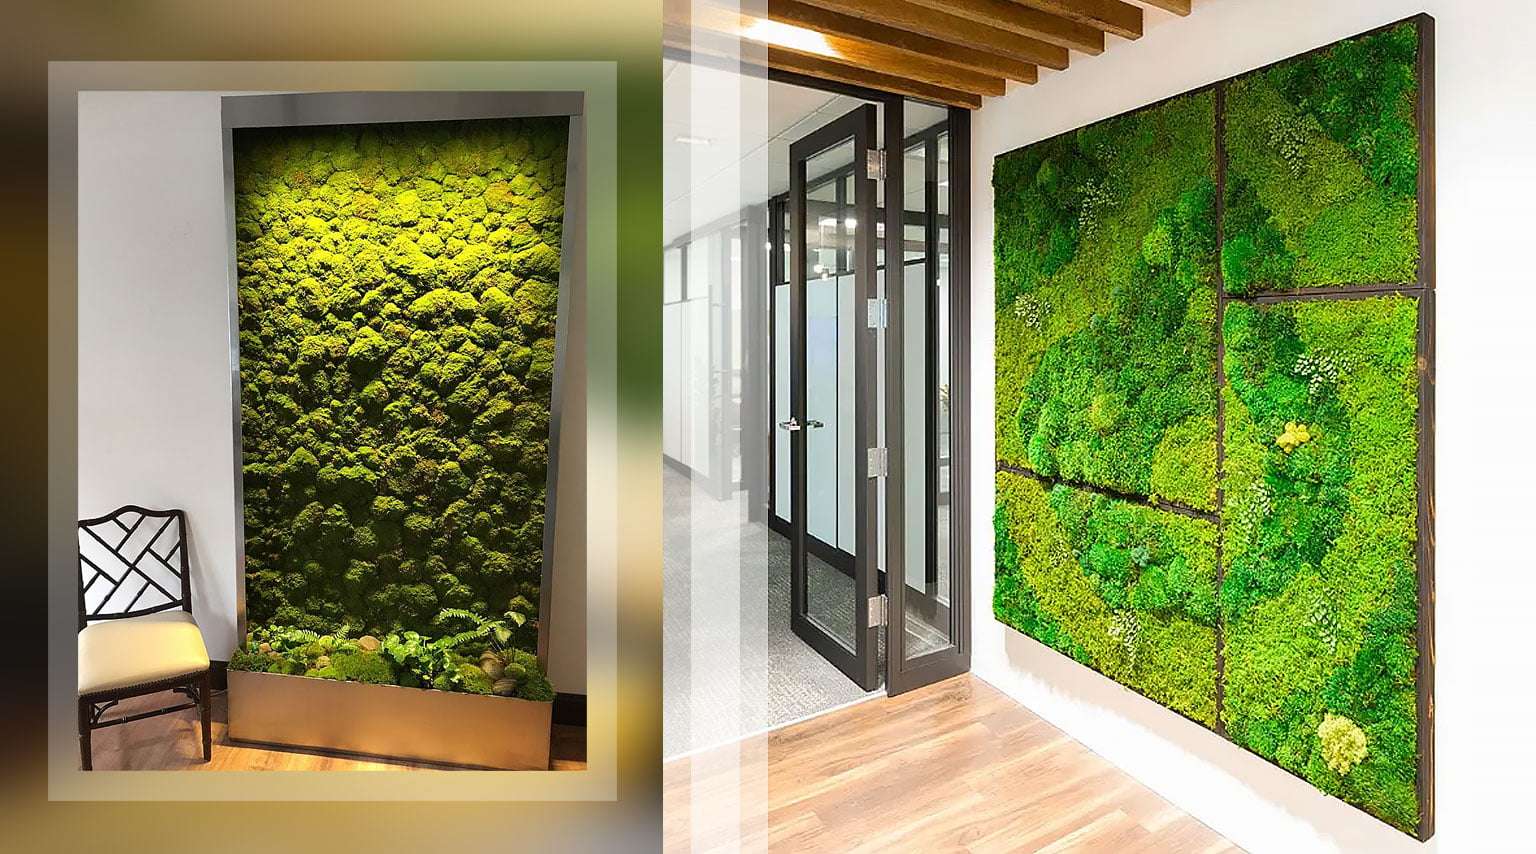 moss wall, burjkhalifa, vertical garden, biophilic design, bespoke tree, indoor & outdoor plants, landscaping, interior Dubai, UAE